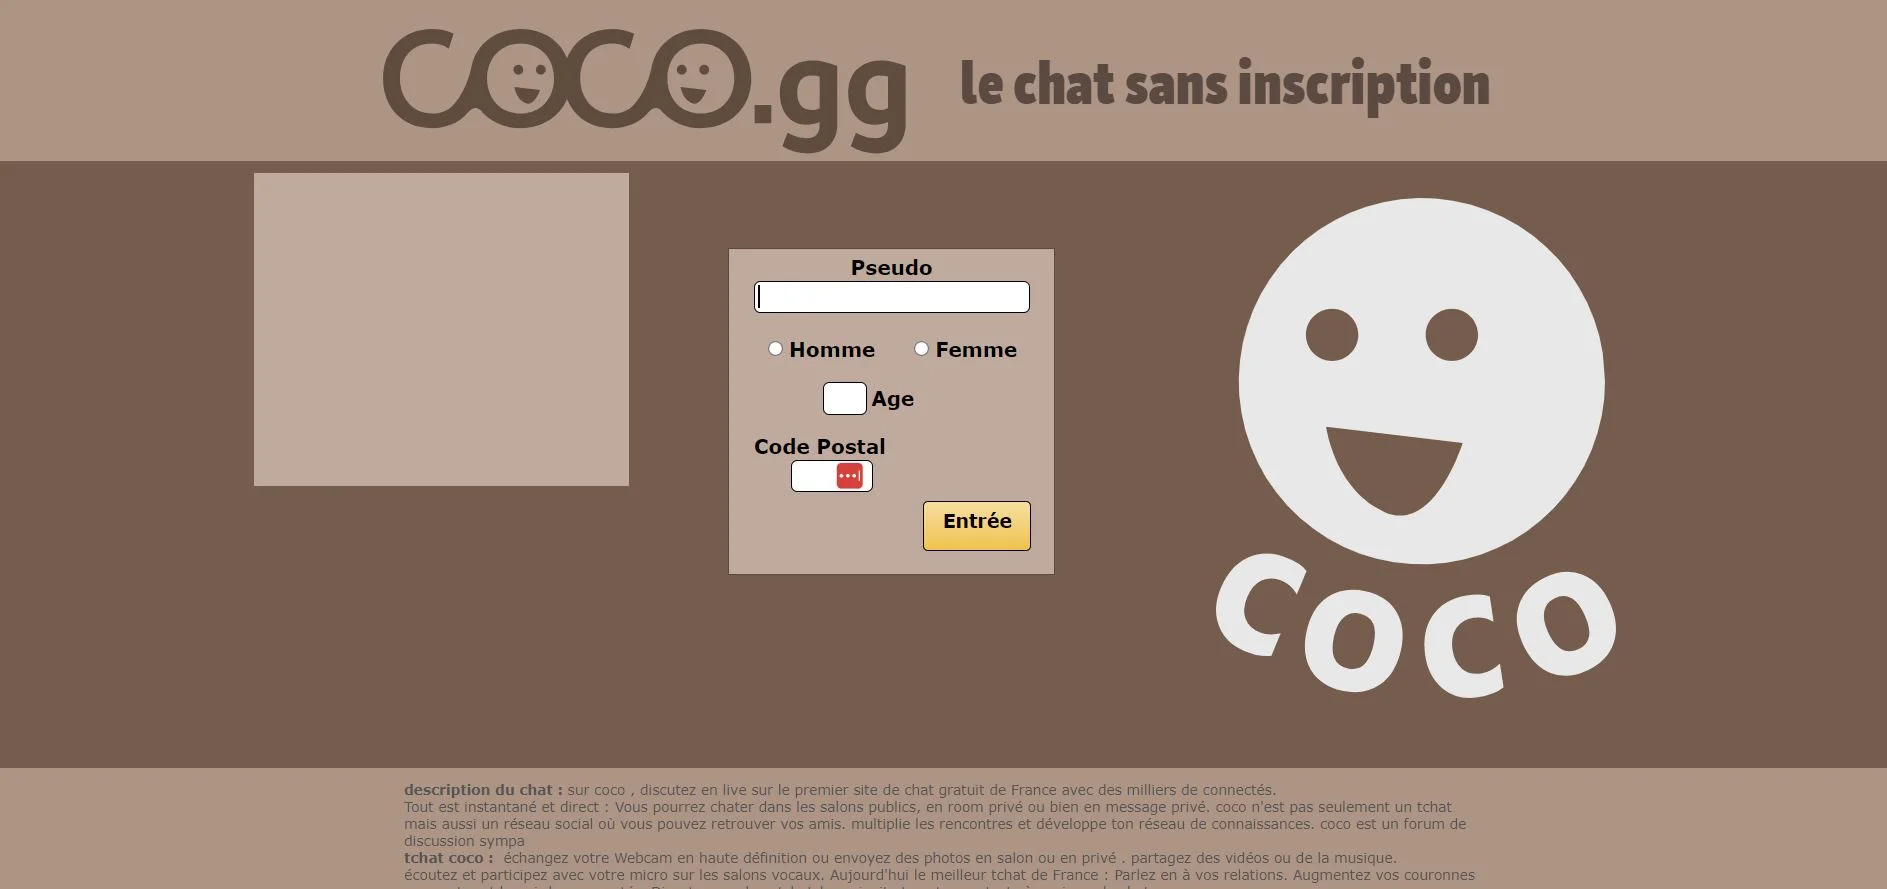 page d'accueil du site Coco.gg